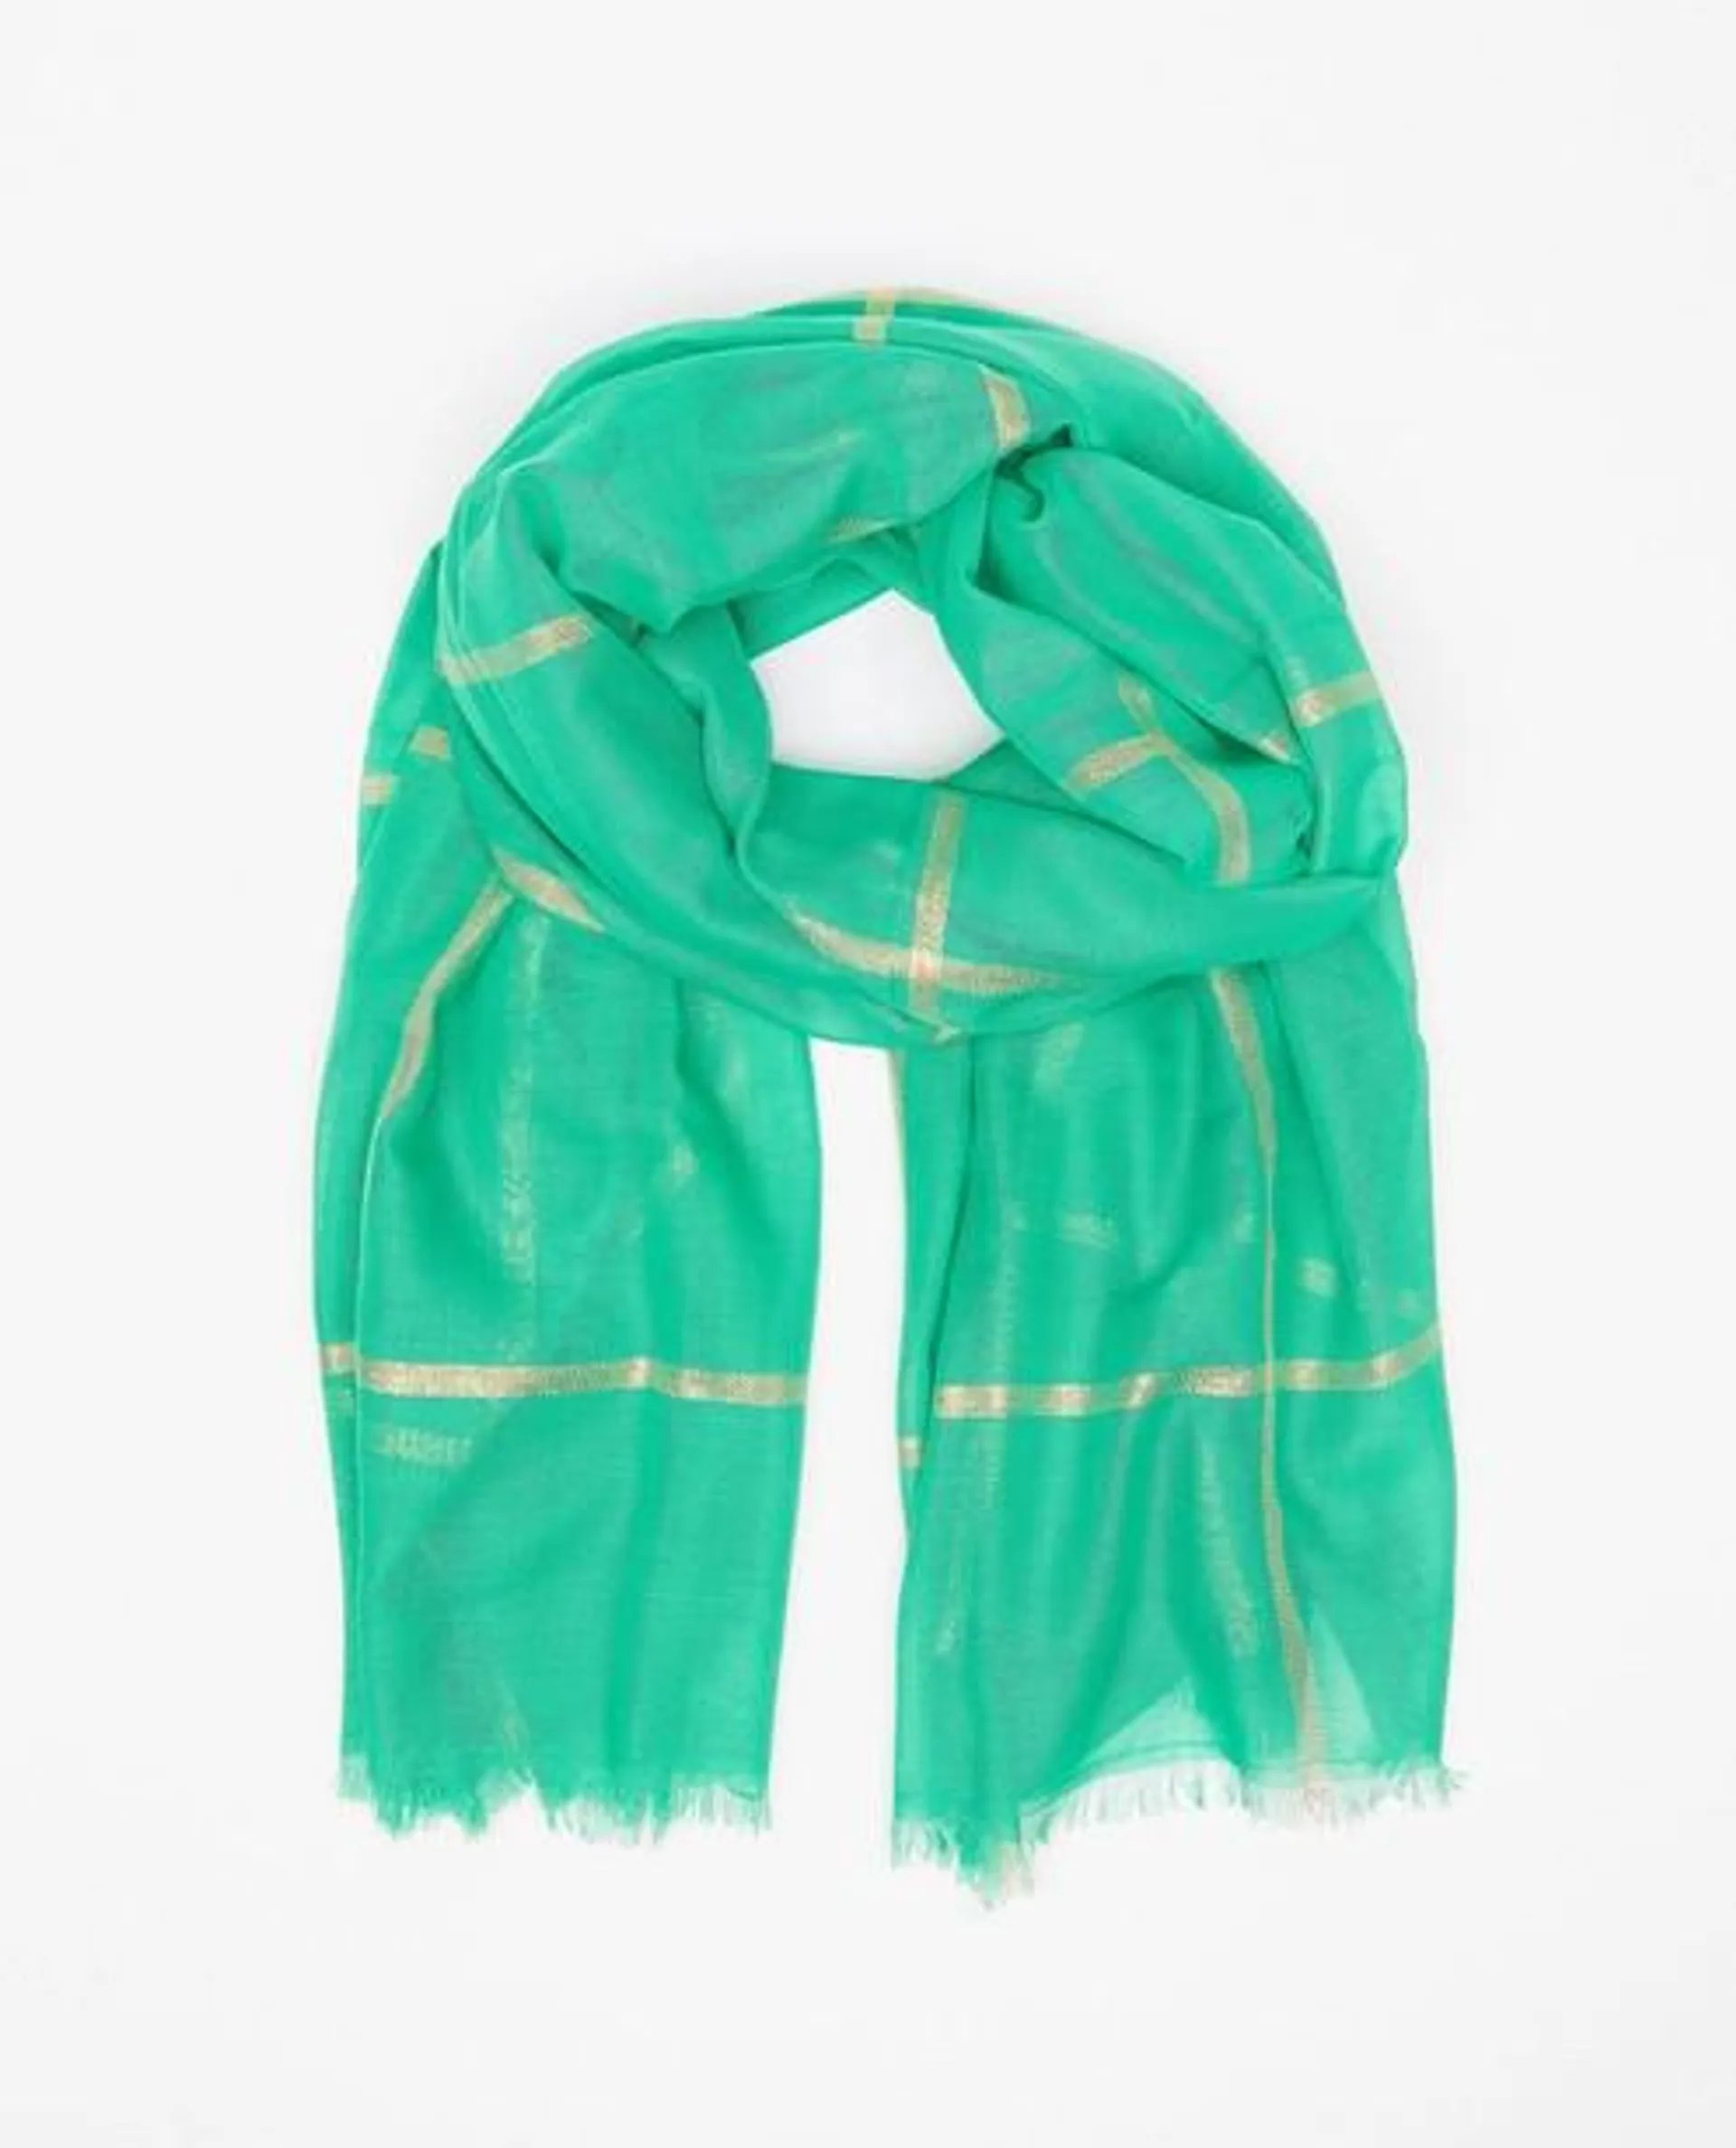 Groene sjaal met metaaldraad